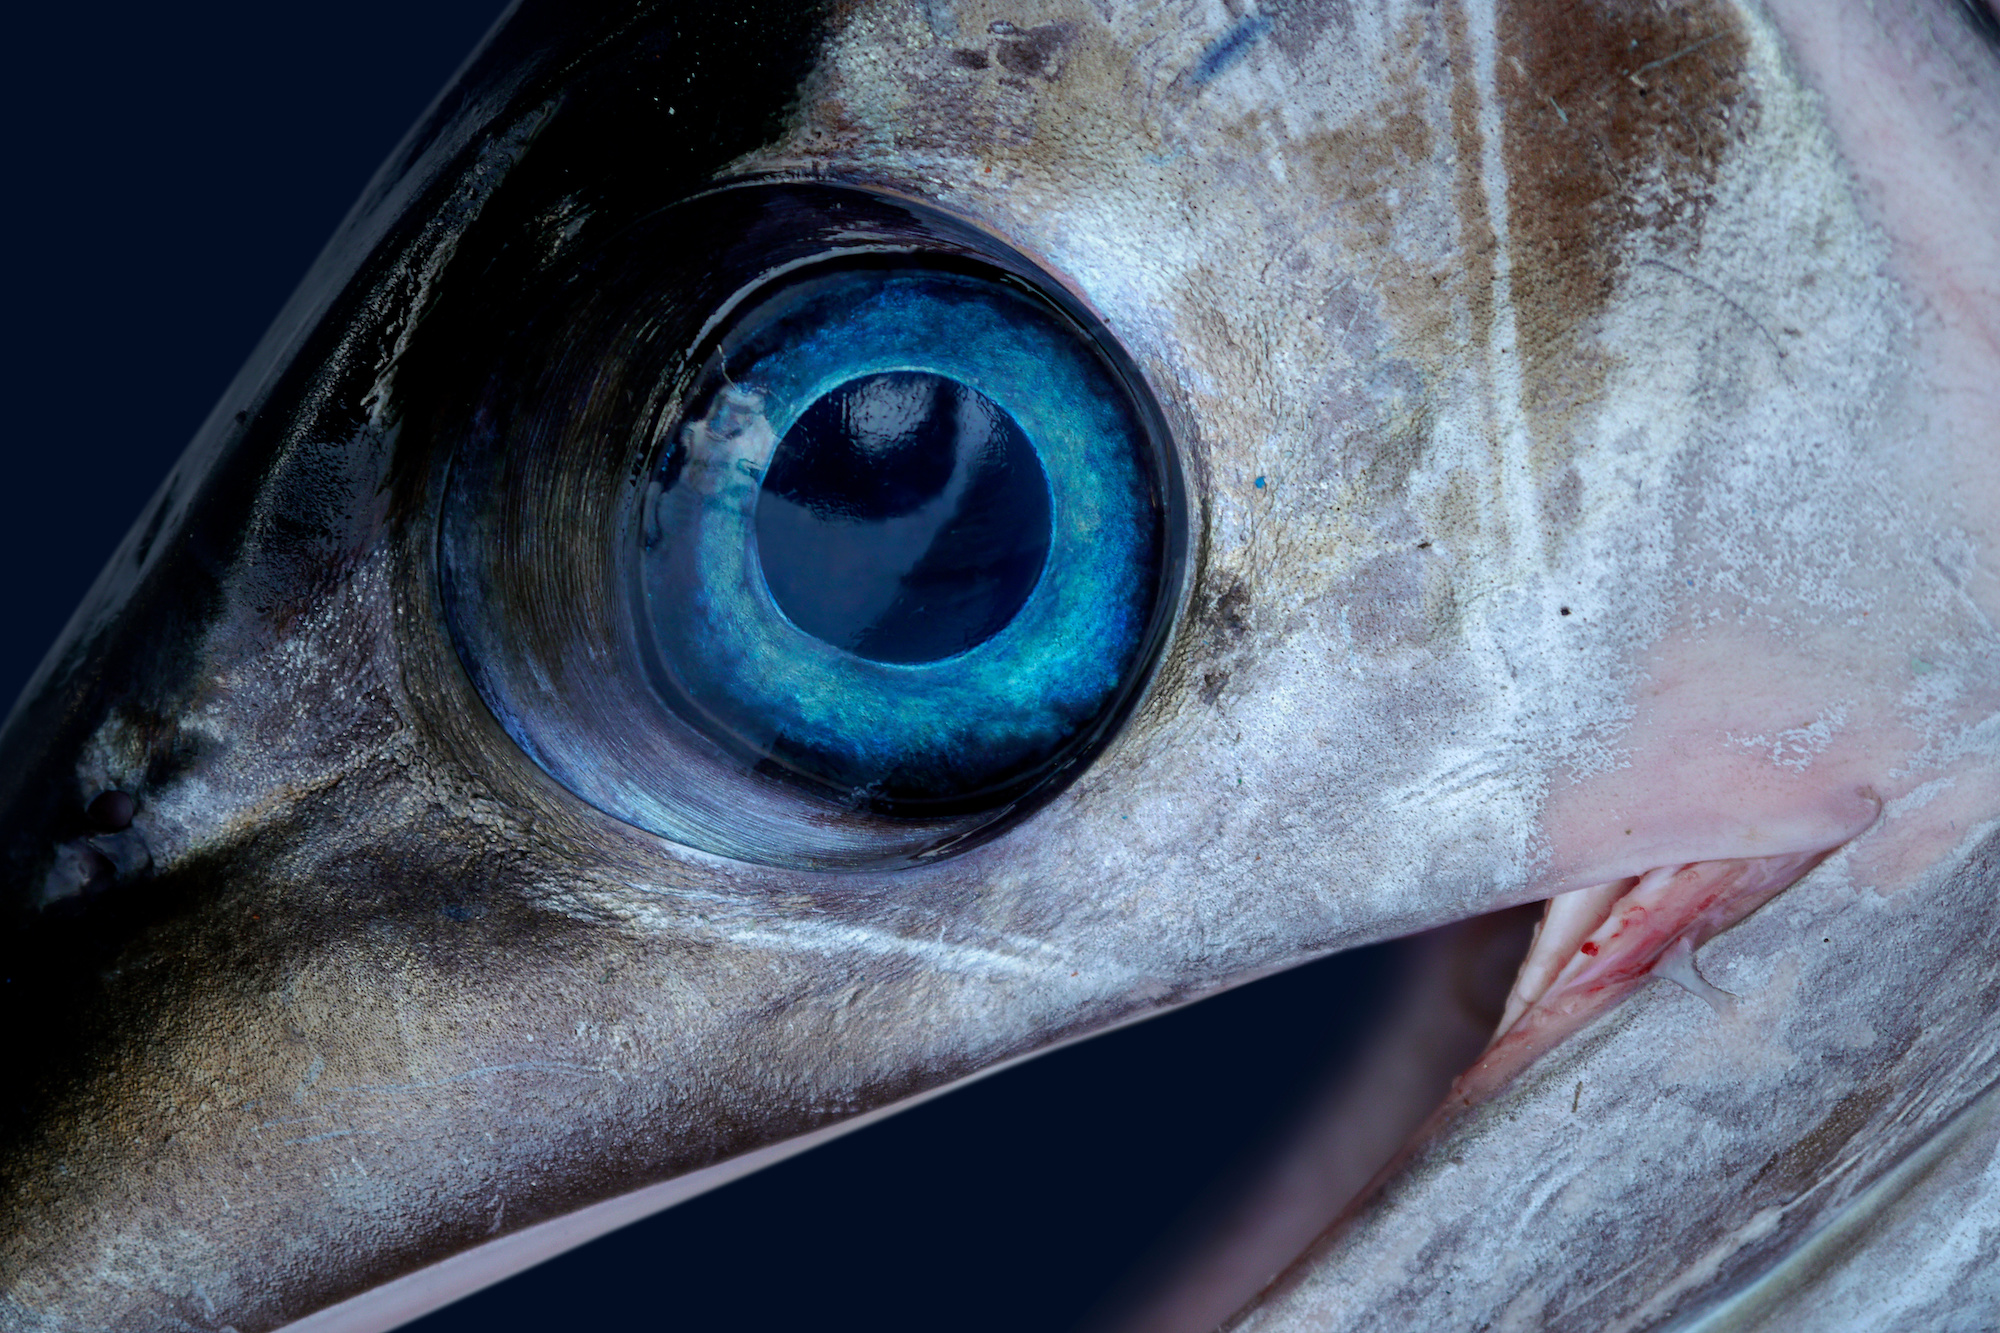 sailfish vs swordfish 5